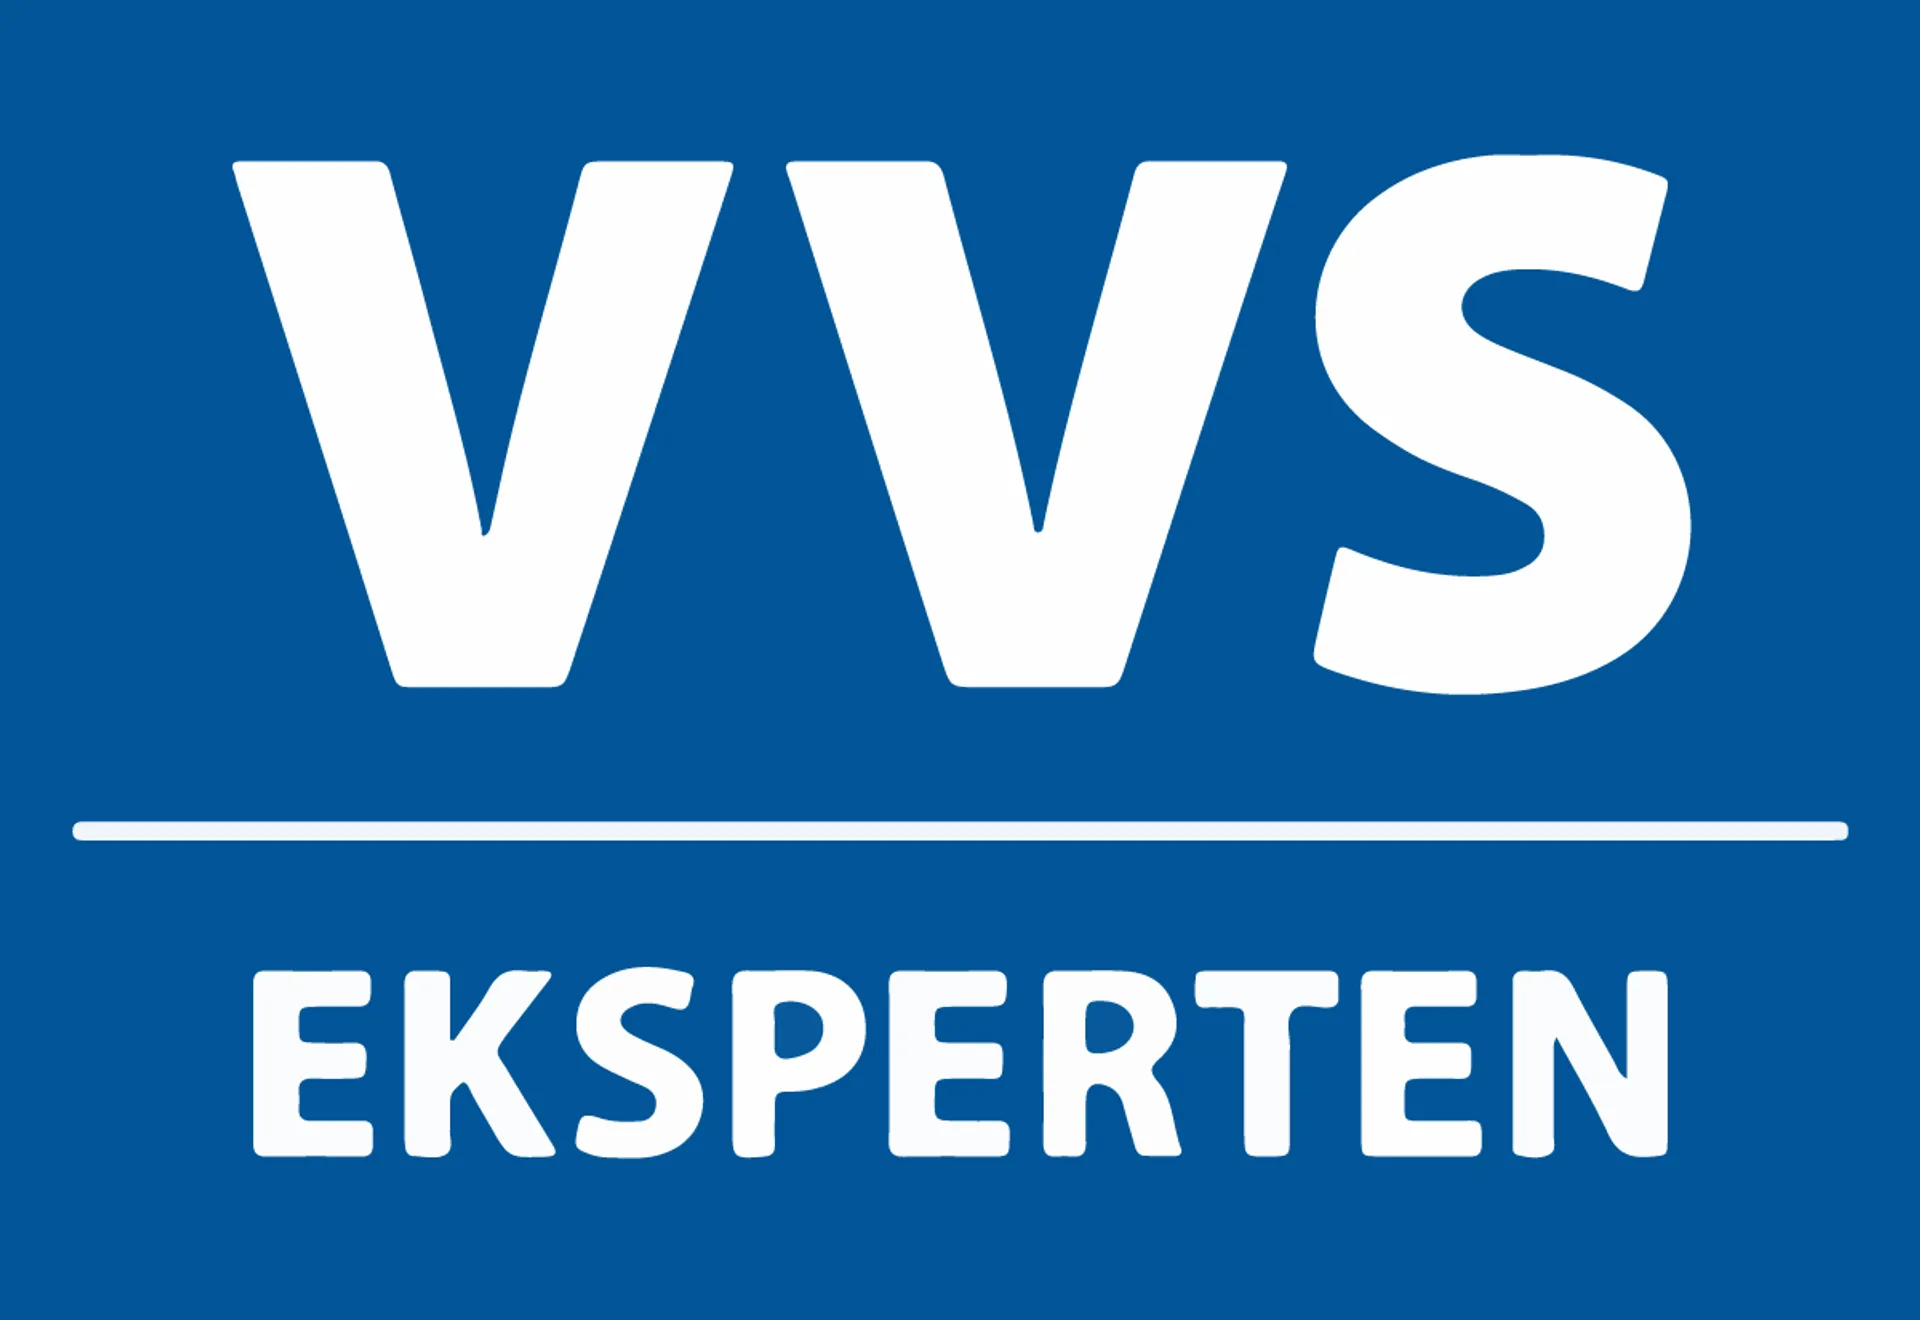 VVS EKSPERTEN logo